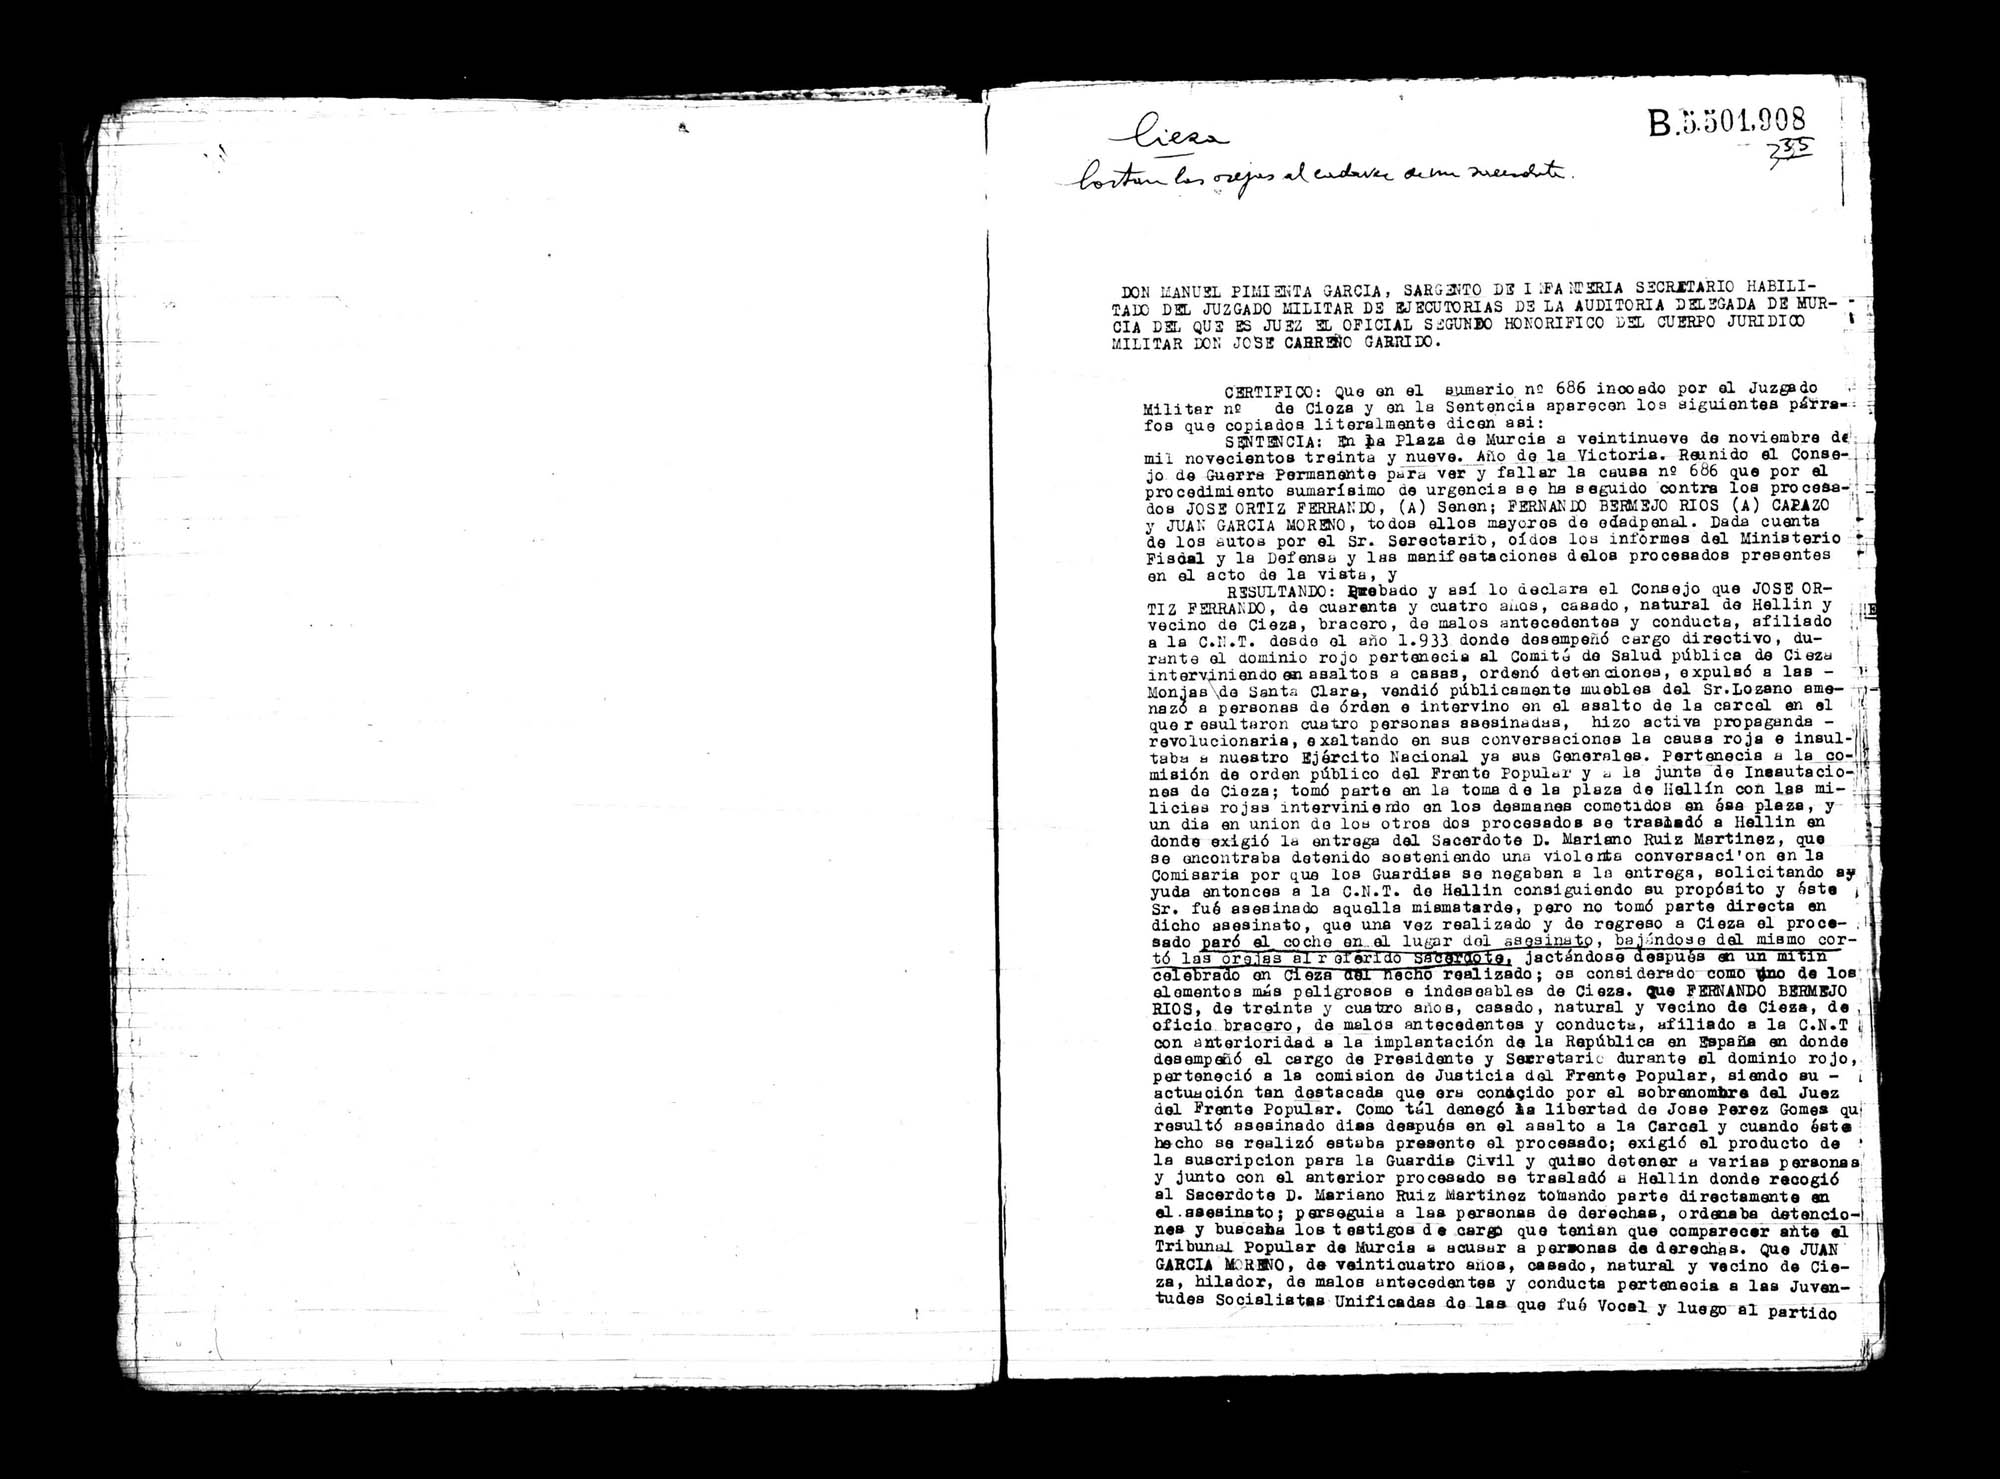 Certificado de la sentencia pronunciada contra José Ortiz Ferrando, Fernando Bermejo Ríos y Juan García Moreno, causa 686, el 29 de noviembre de 1939.